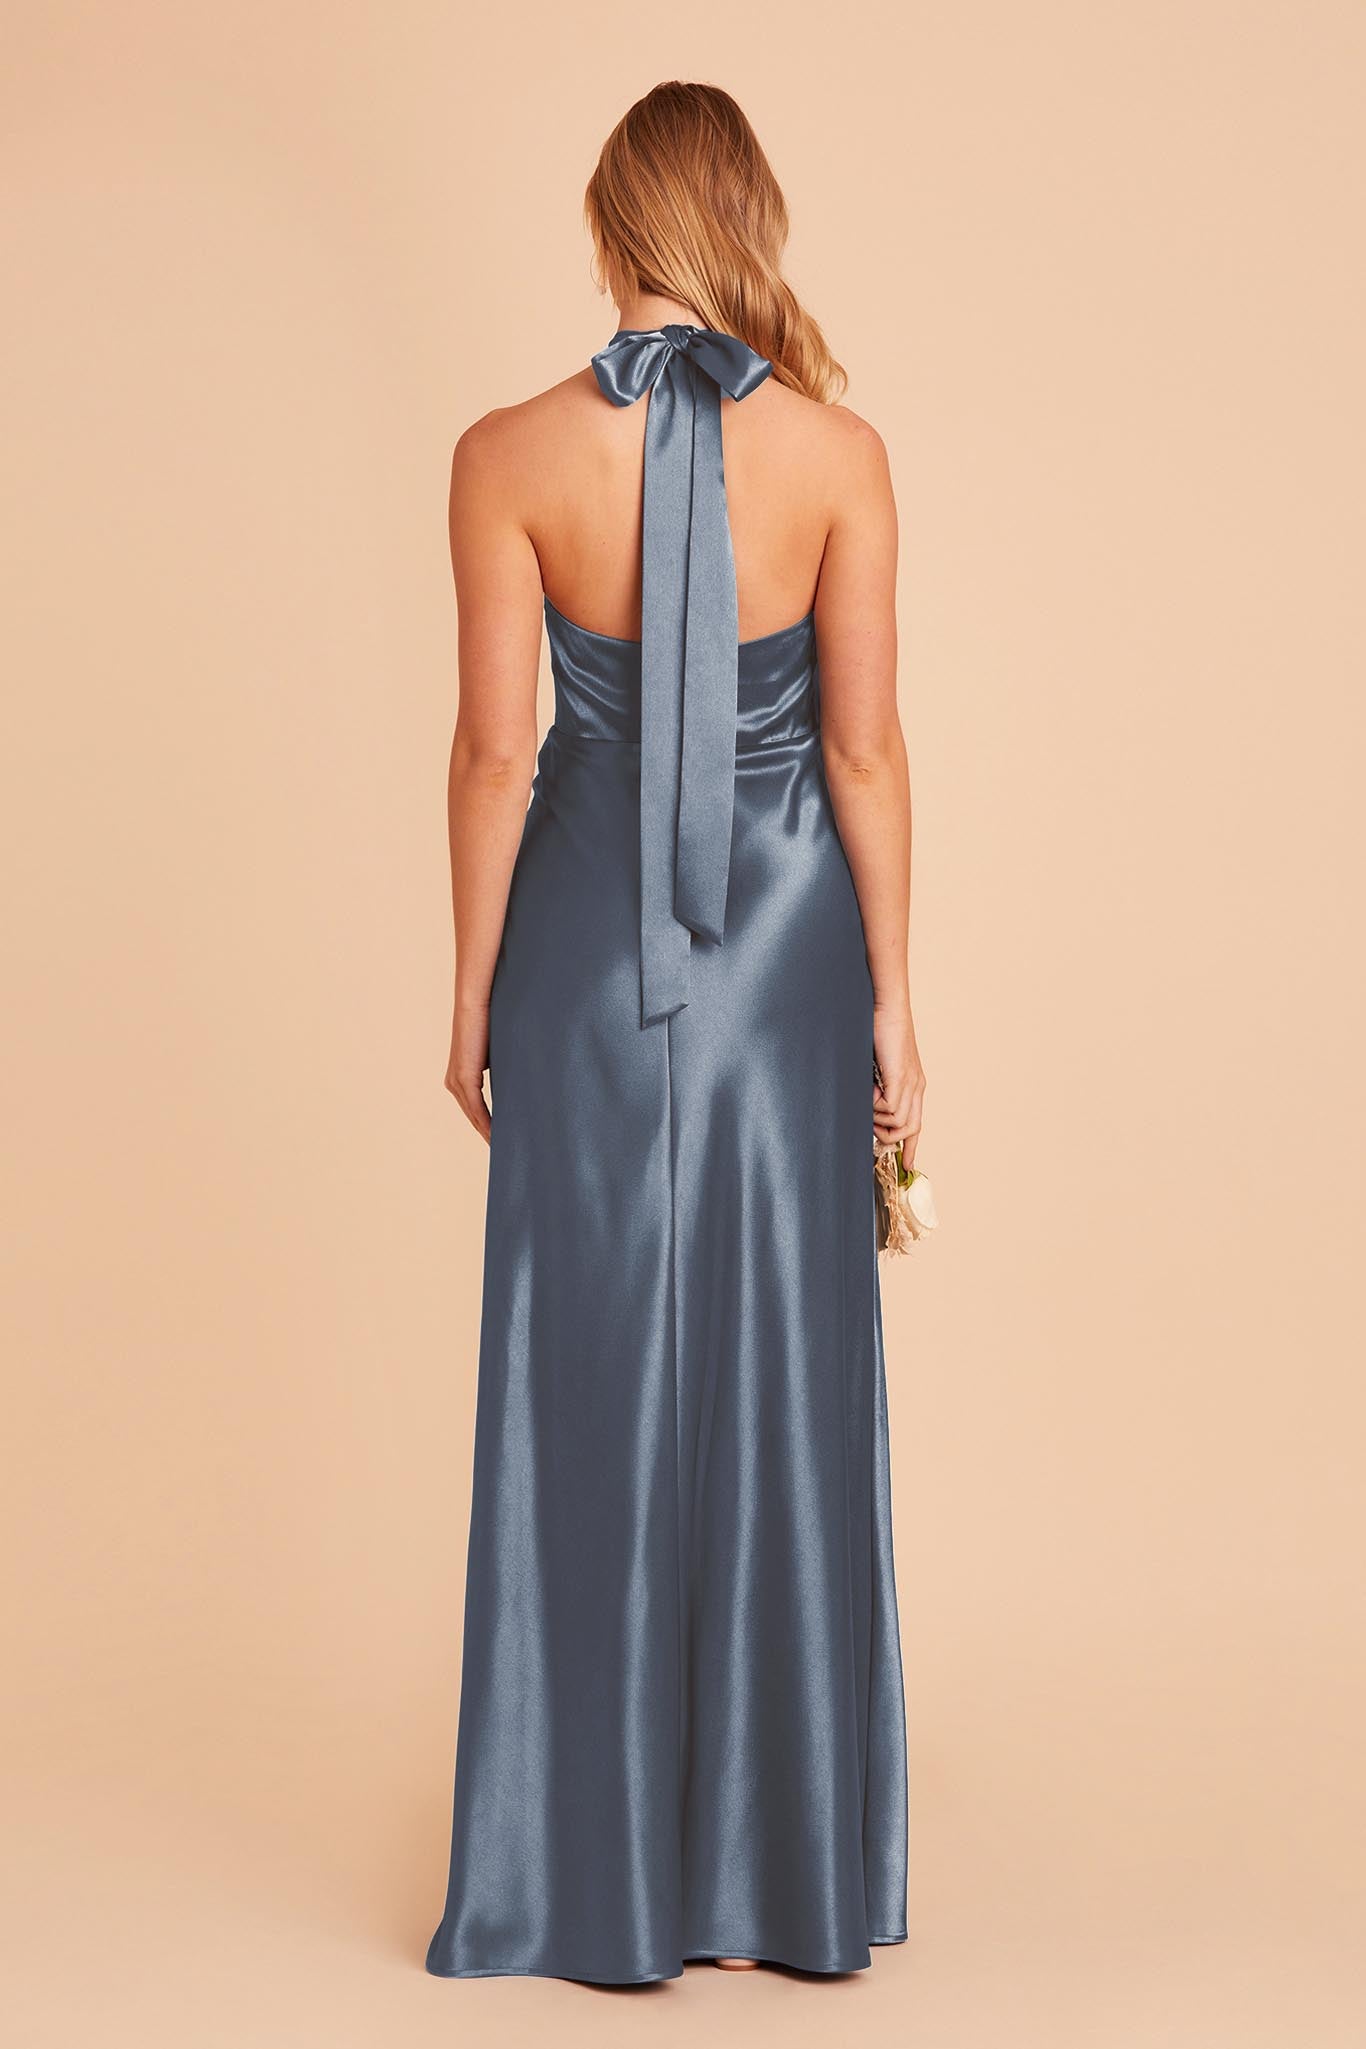 French Blue Monica Satin Dress by Birdy Grey